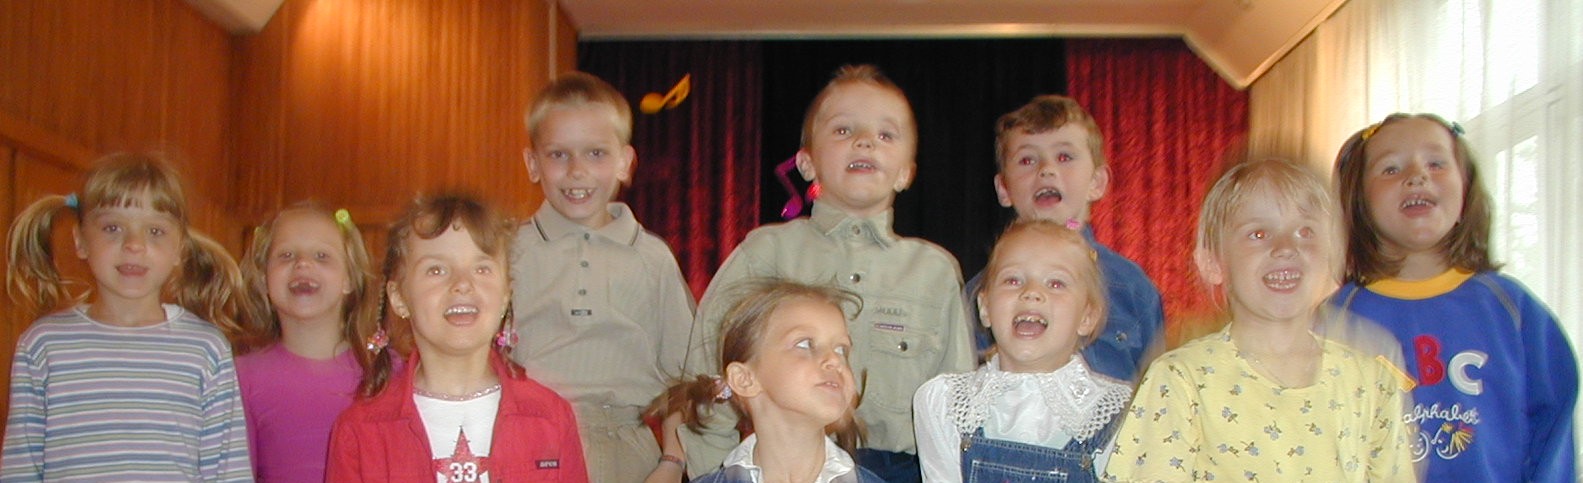 Najmłodsza "przedszkolna” grupa "Chwilki” podczas próby przed występem na niedzielnym festynie